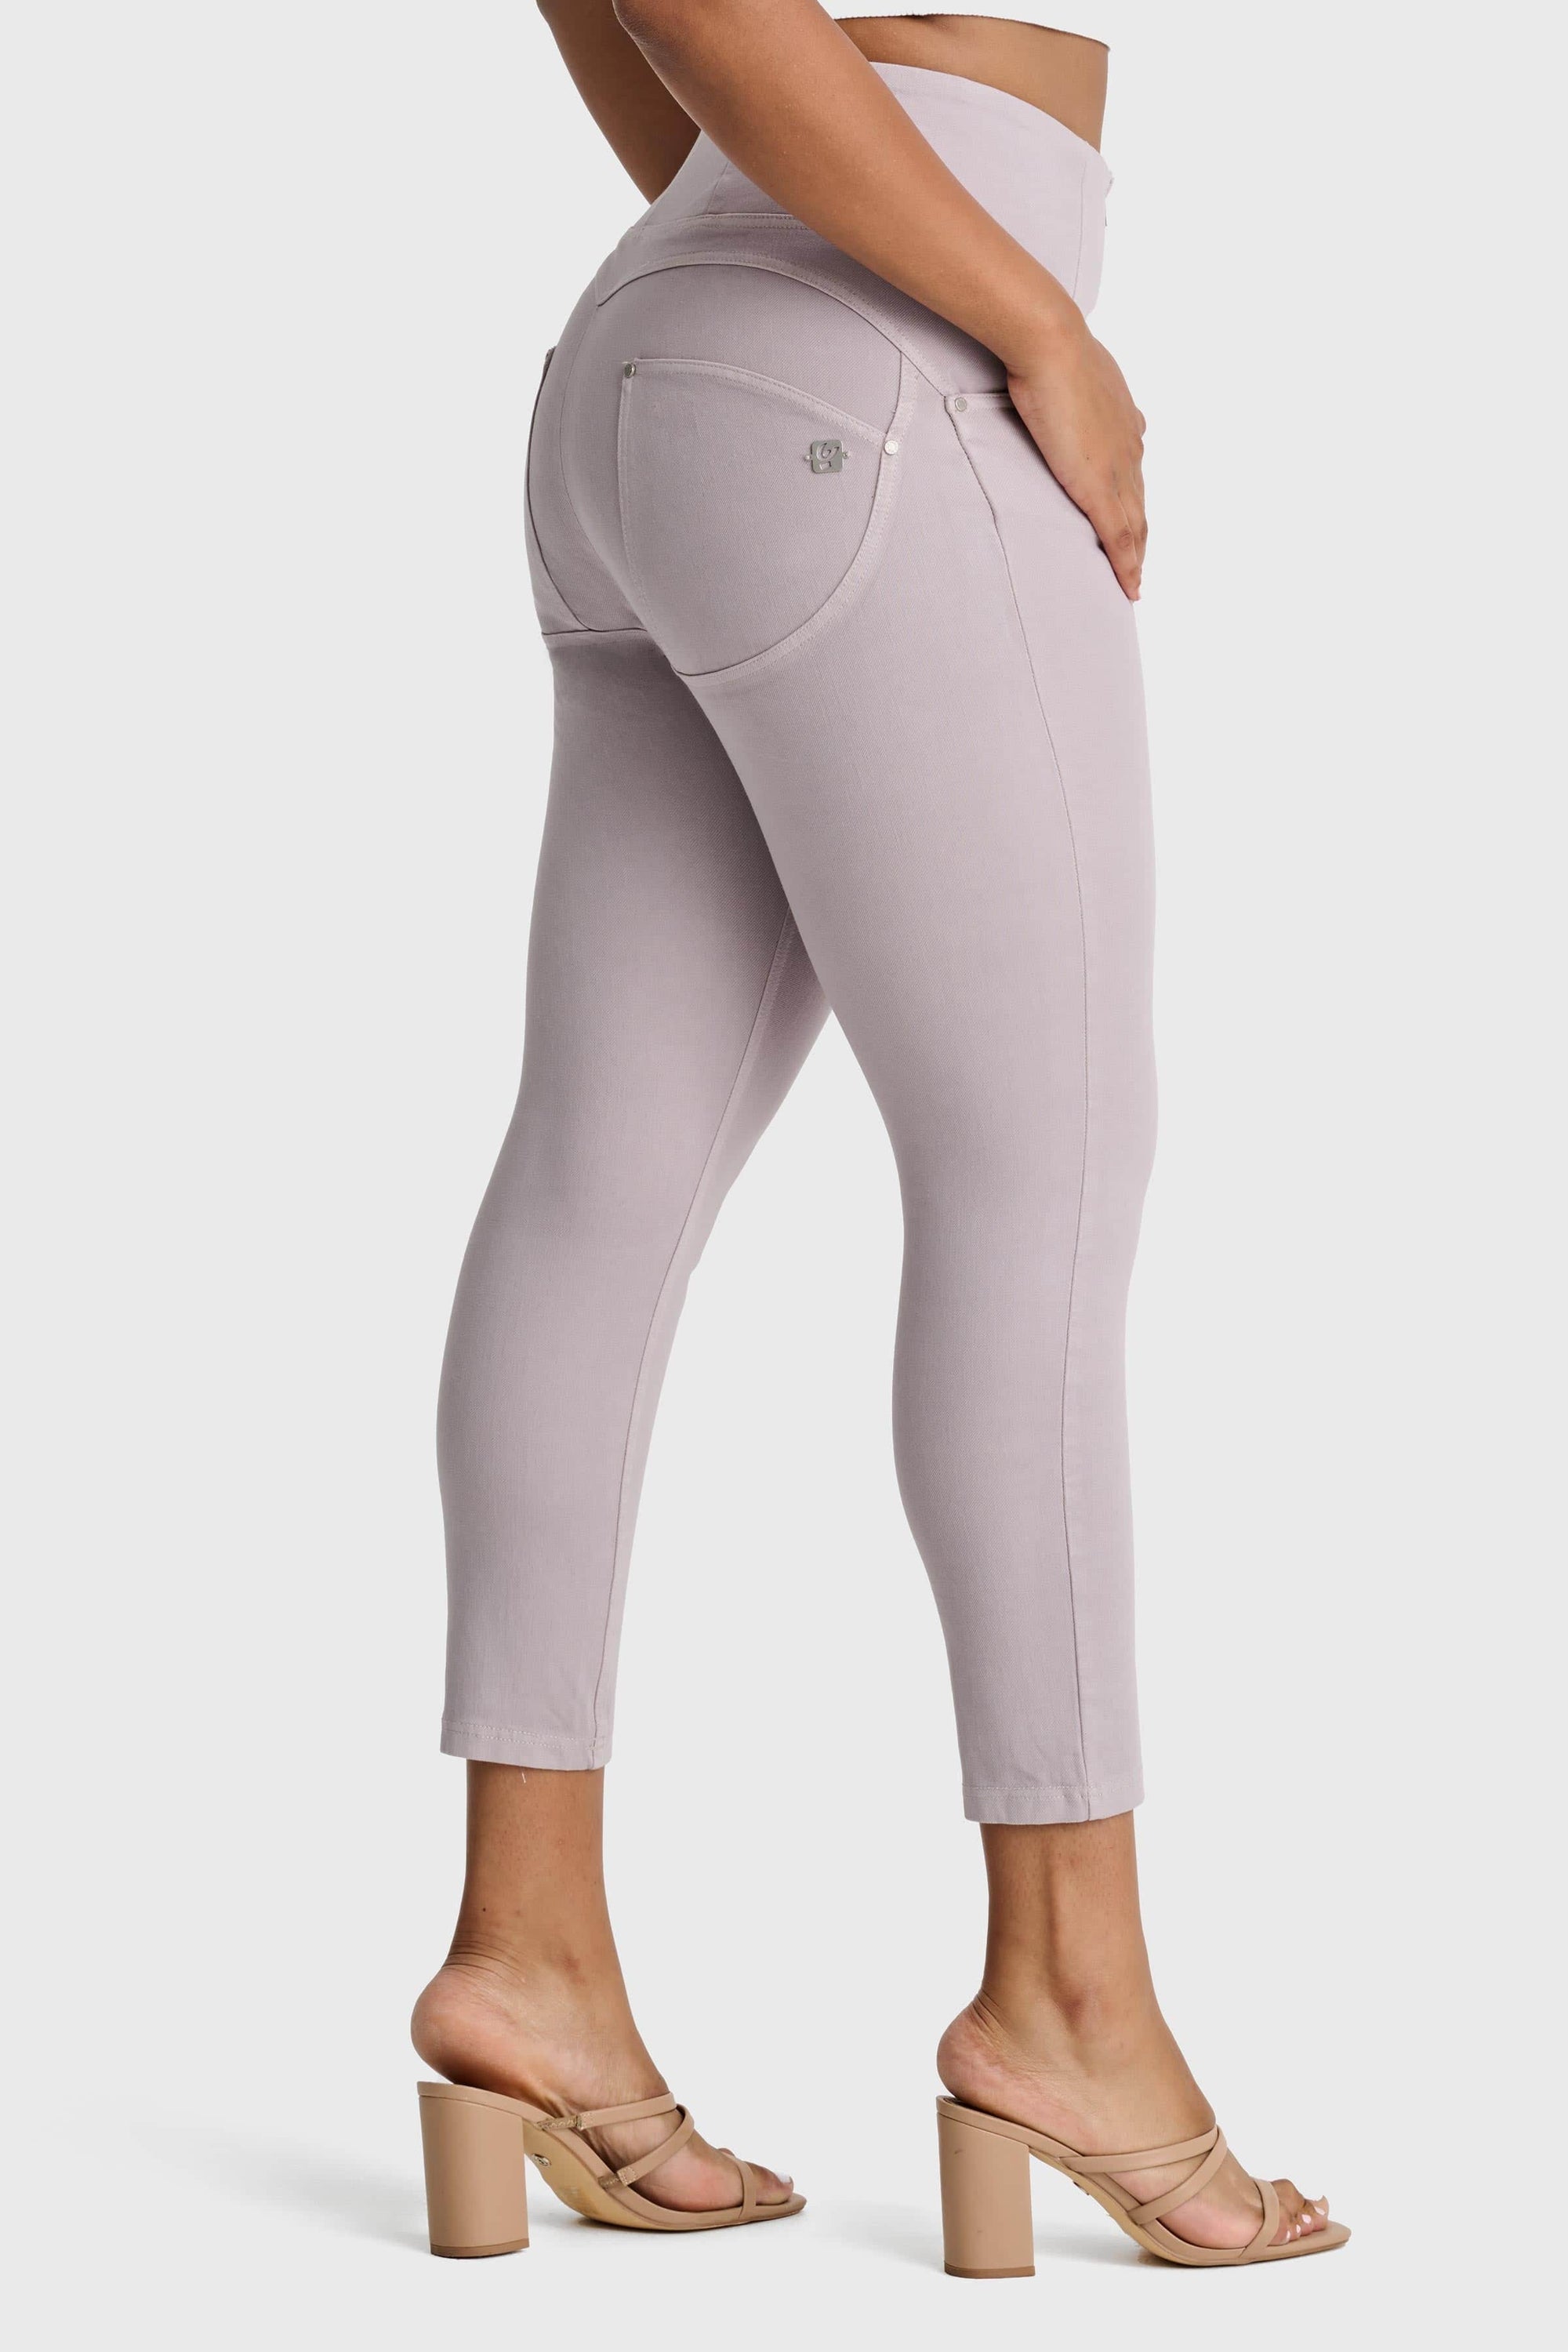 WR.UP® Snug Curvy Jeans - High Waisted - 7/8 Length - Light Grey 1